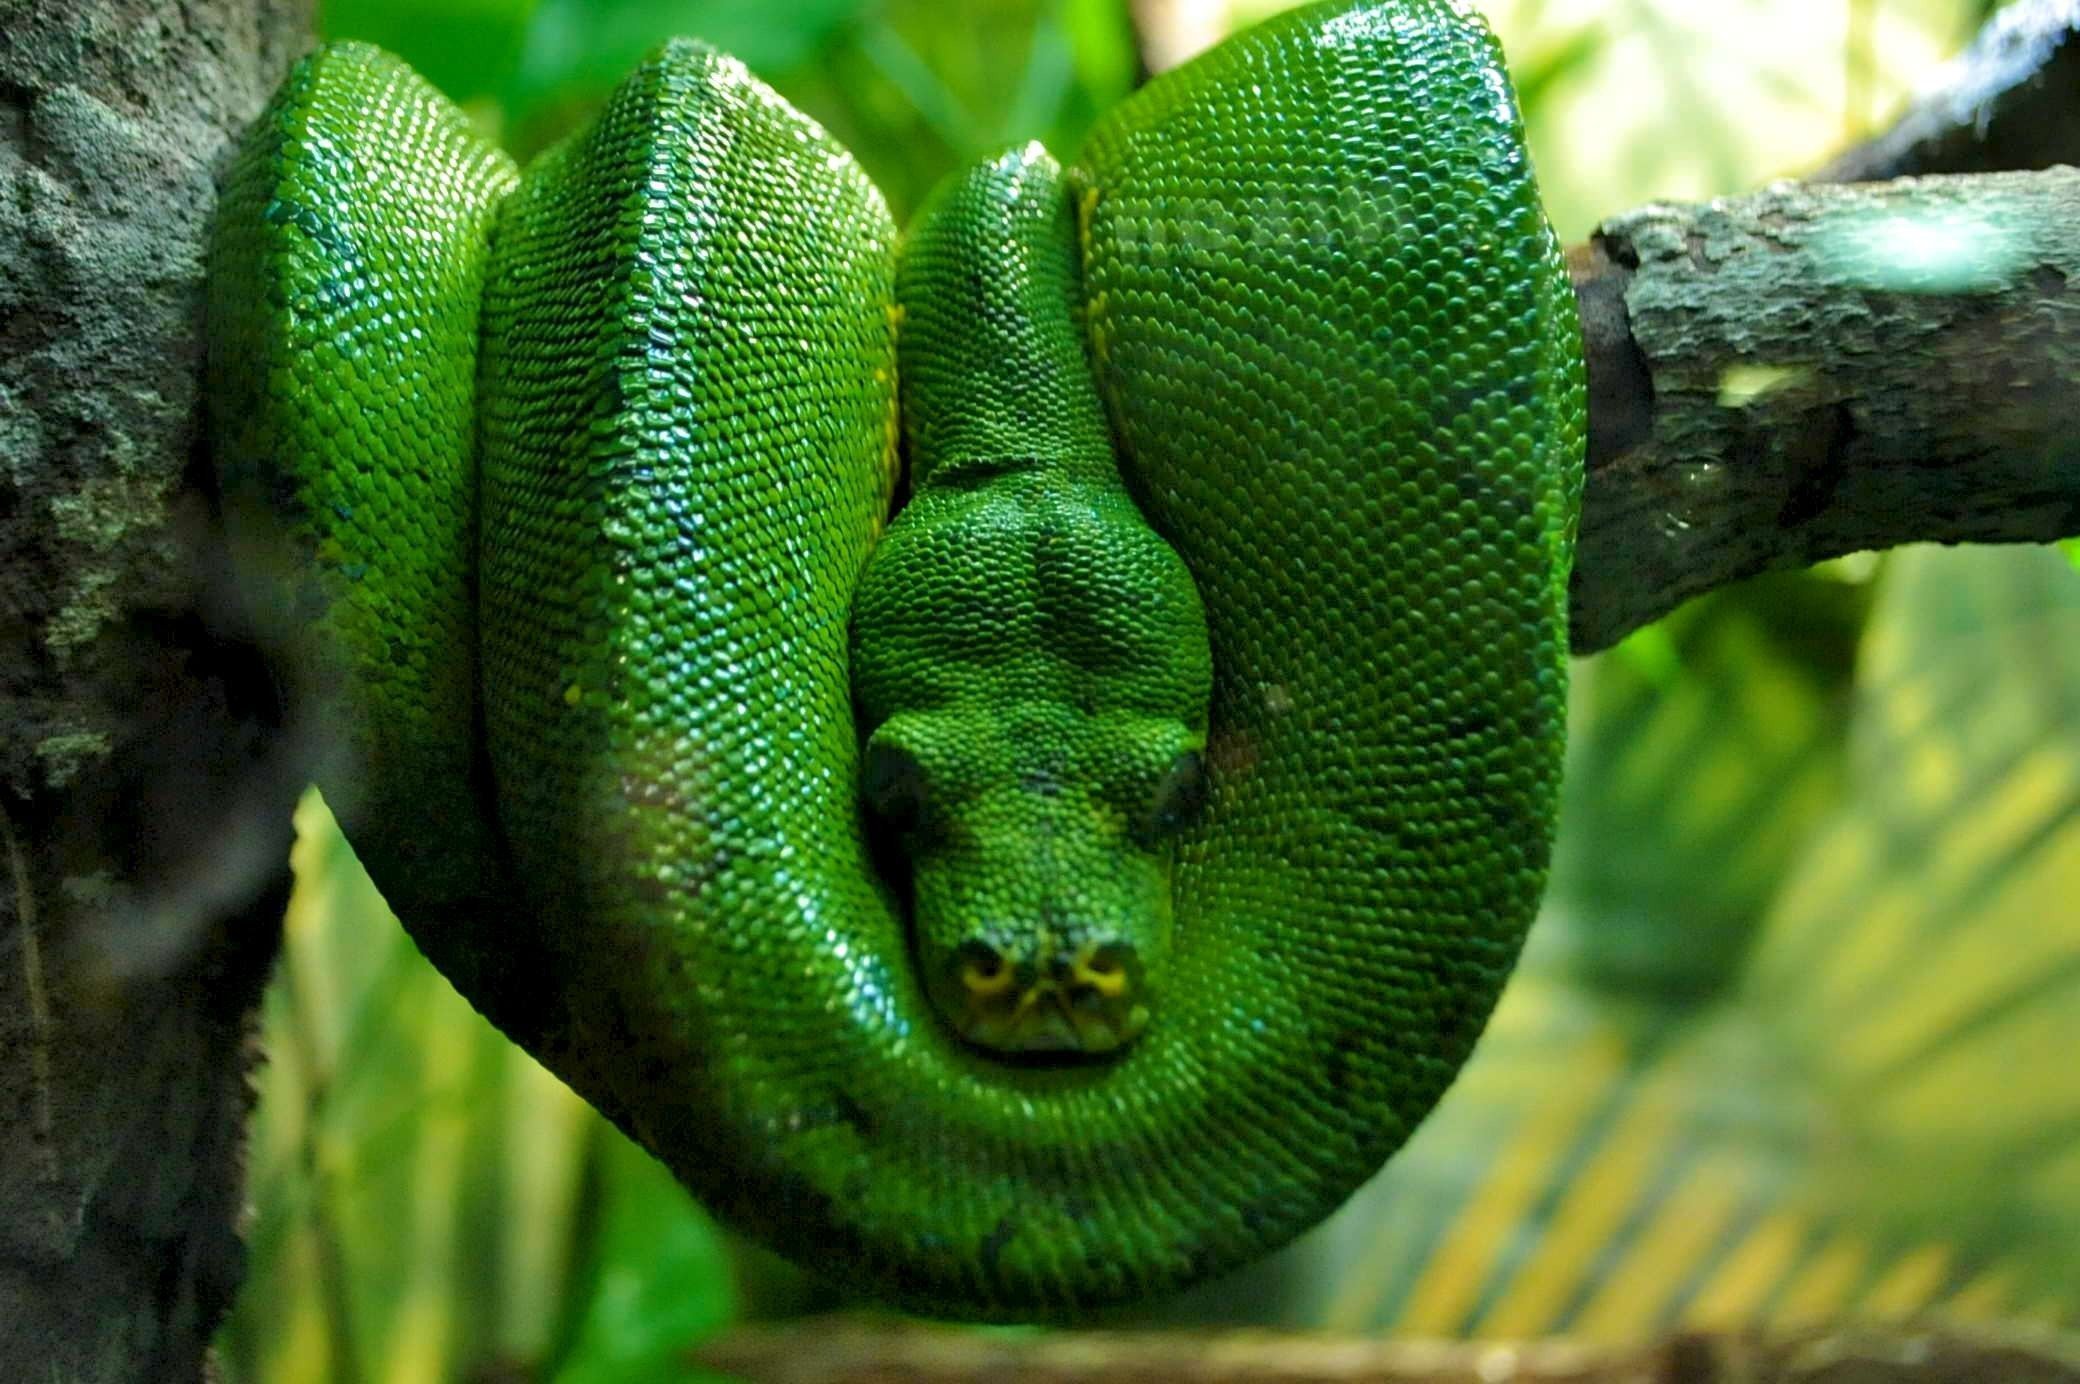 Змеи в тропическом лесу. Зелёный питон пресмыкающиеся?. Собакоголовый удав. Фауна экваториальных лесов Южной Америки. Зеленая мамба, рептилия, Elapidae.